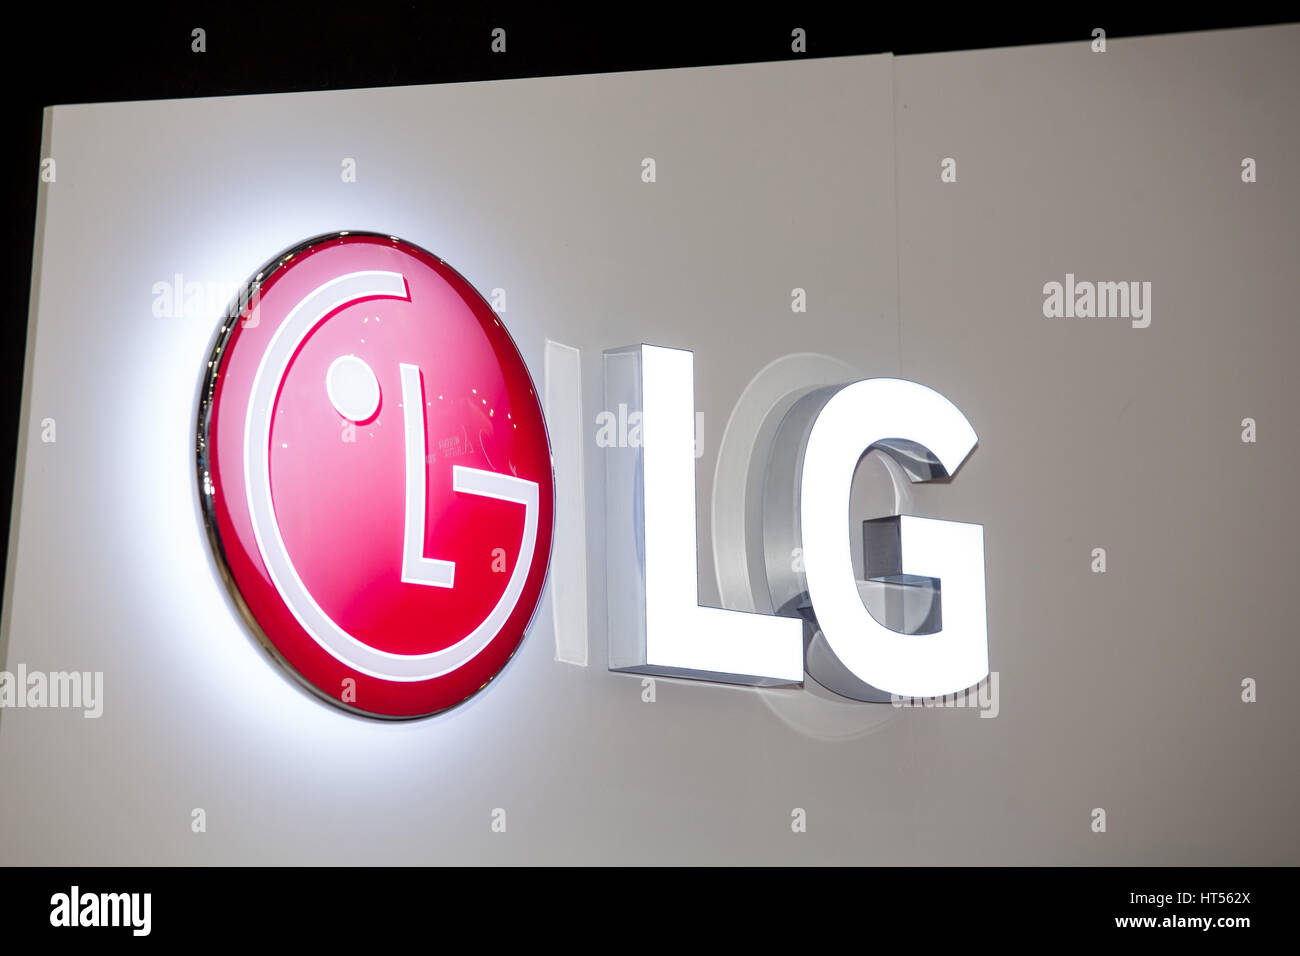 Moscou, Russie - Février 2016 : LG logo de l'entreprise sur le mur. LG est un conglomérat multinational corporation Banque D'Images